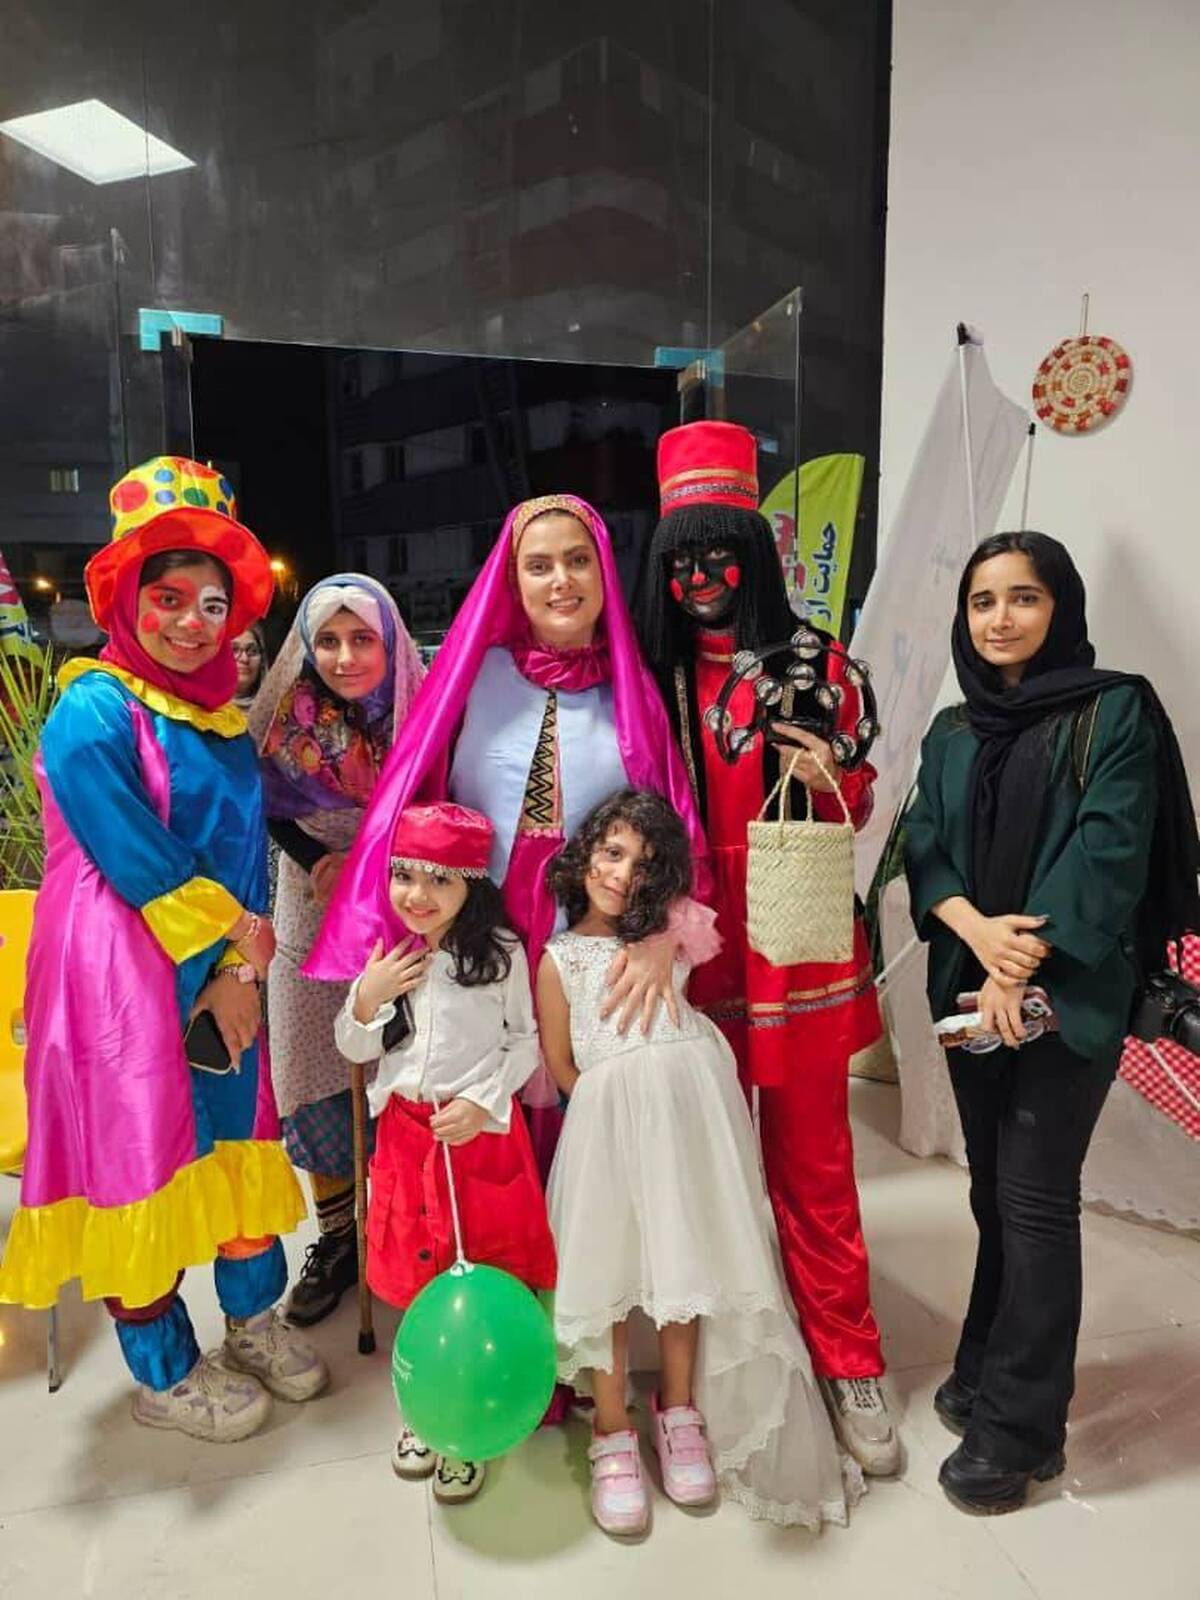 فروشگاه خیریه ساحل با هدف کمک به درمان کودکان مبتلا به بیماری سرطان تحت پوشش موسسه خیریه ساحل خلیج فارس افتتاح شده است.